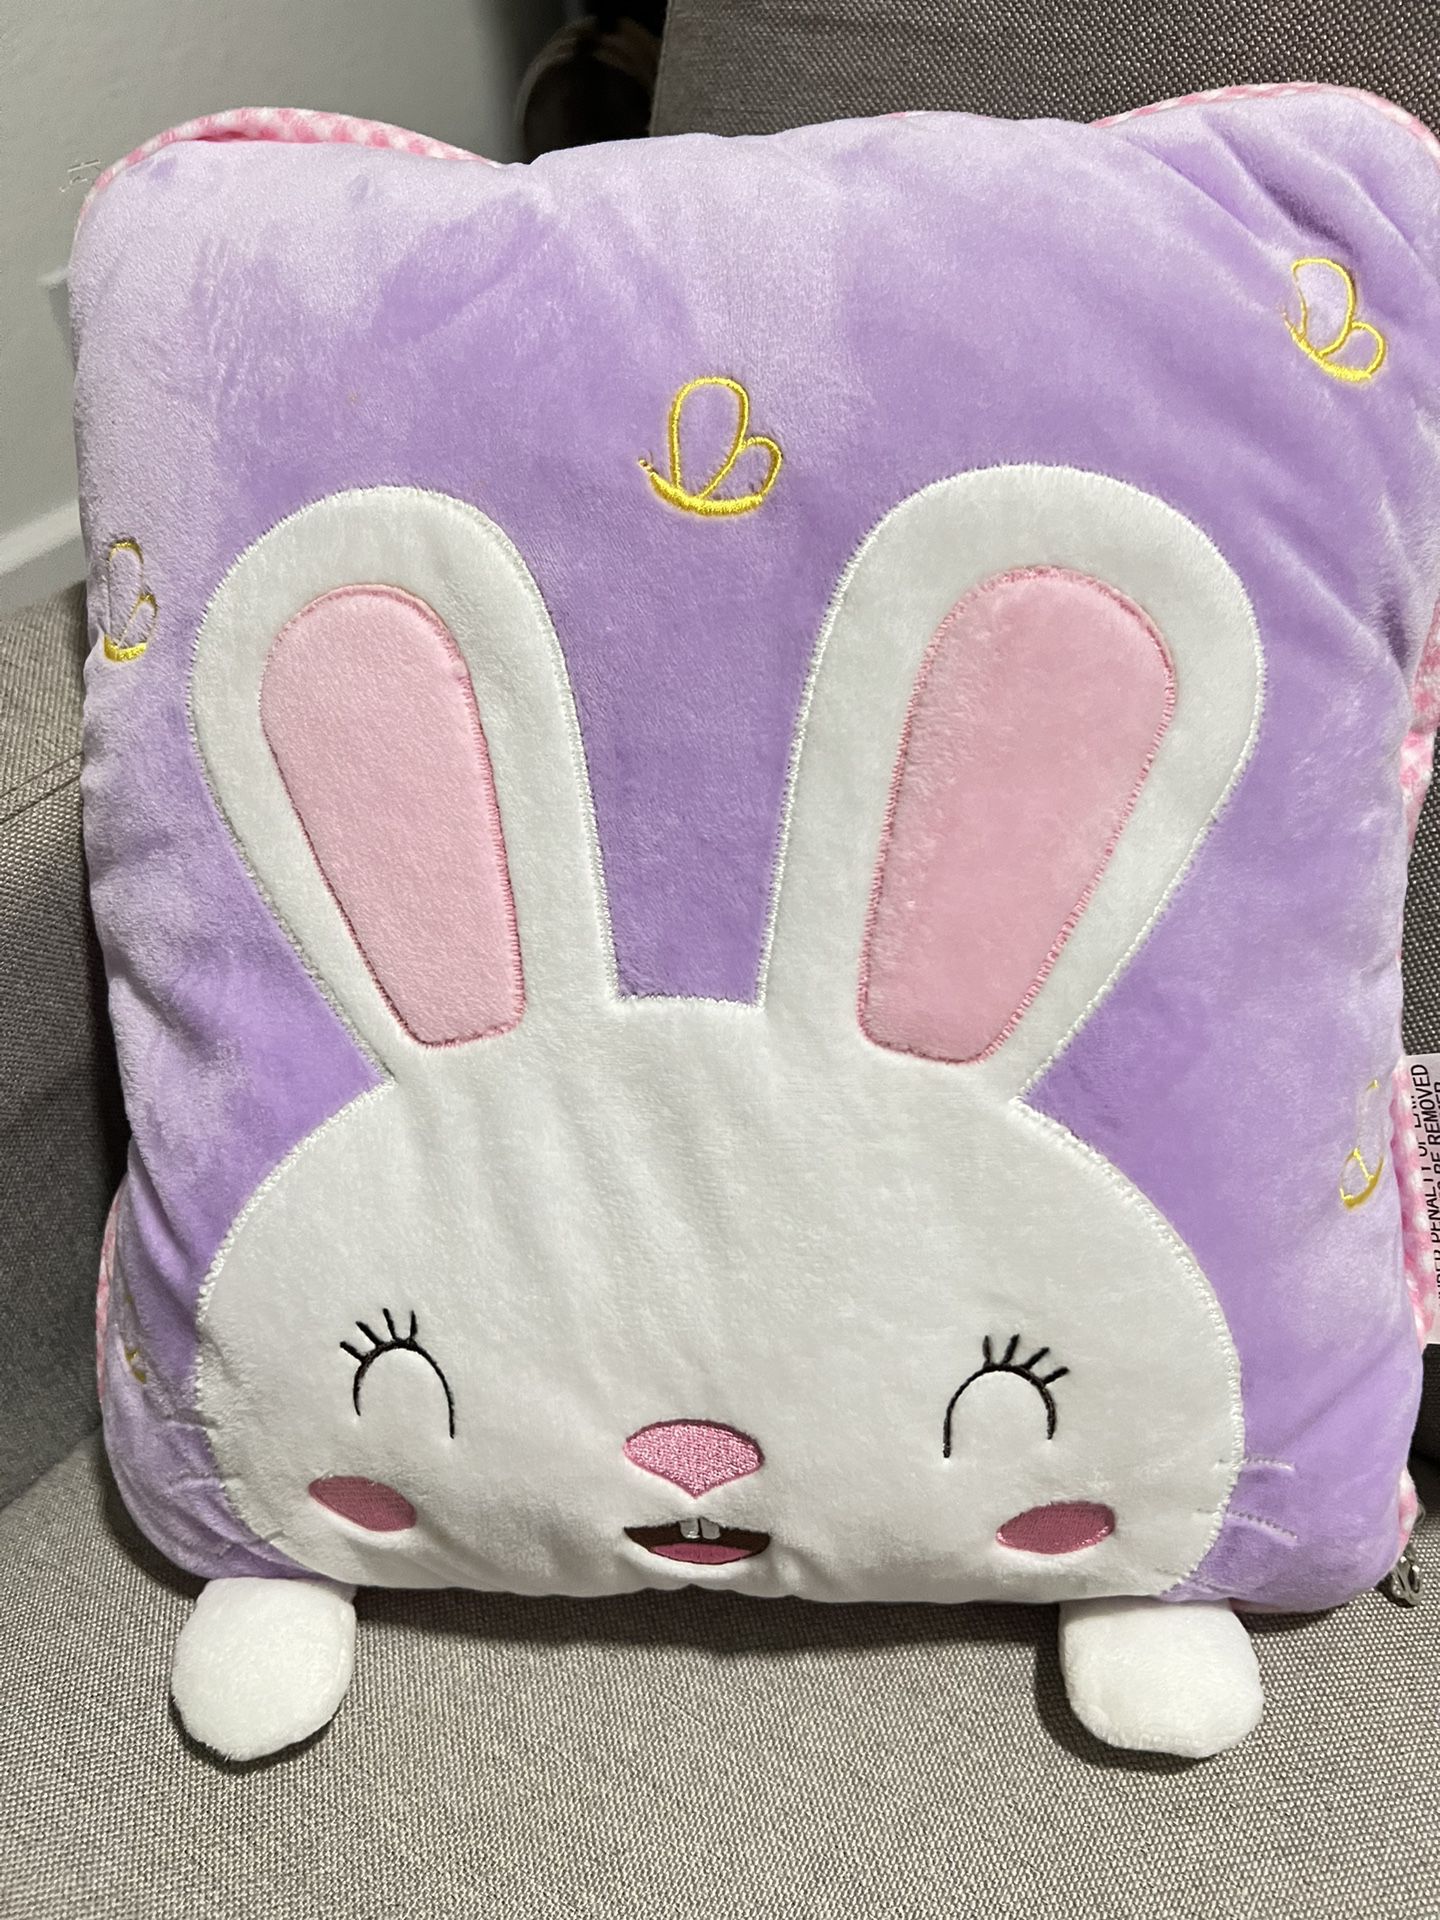 HugFun Super Soft Baby Blanket & Cozy Cushion 2 in 1 